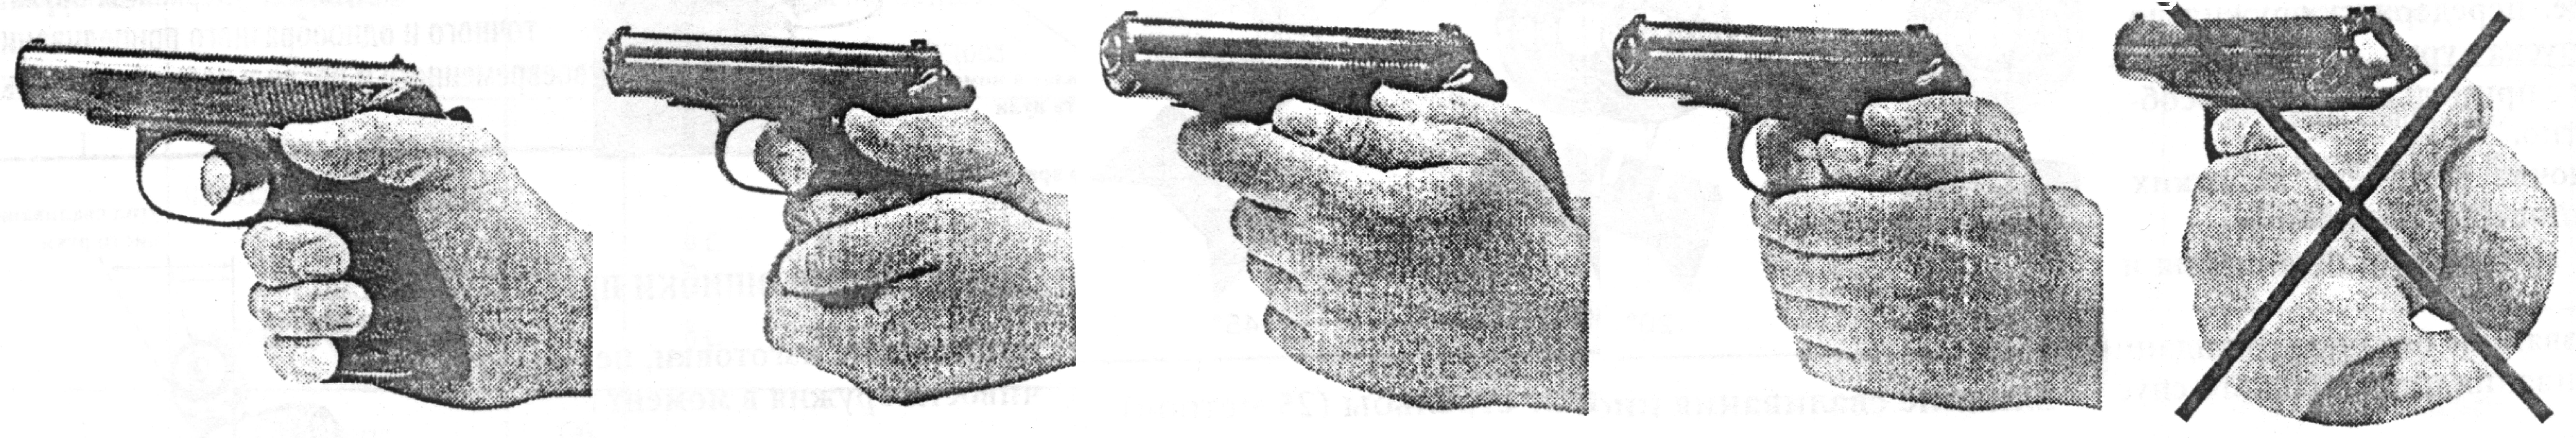 Подготовка к пм. Правильный хват пистолета Макарова. Хват пистолета ПМ двумя руками. Правильный хват пистолета Макарова двумя руками. Правильный хват пистолета Макарова двумя.